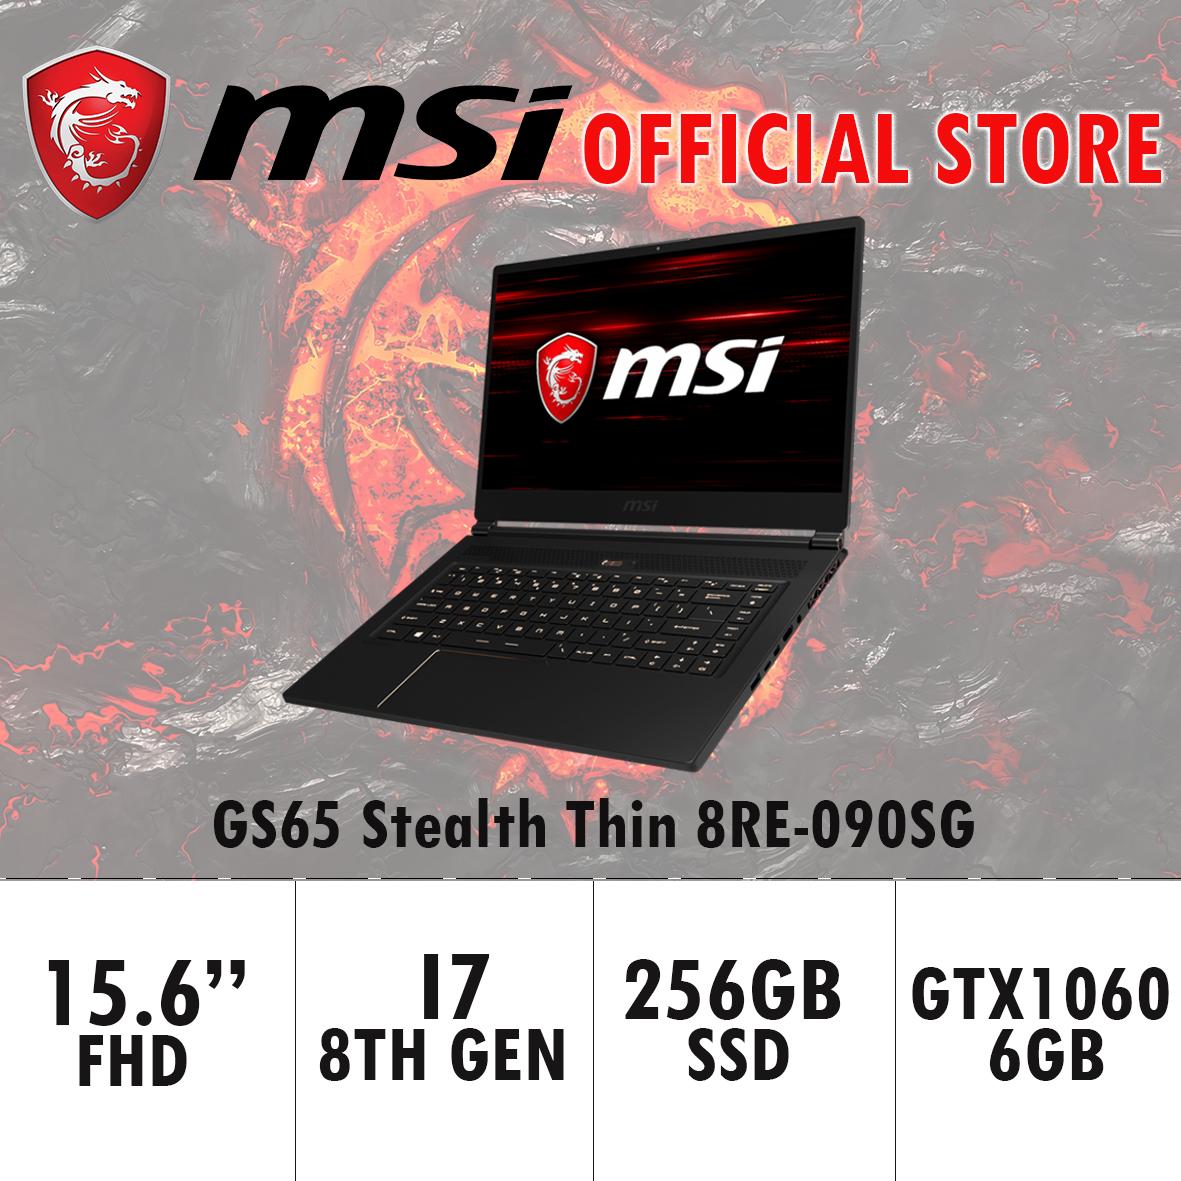 MSI GS65 Stealth Thin 8RE-090SG (I7-8750H/16GB DDR4/256GB SSD /6GB NVIDIA GTX1060) GAMING LAPTOP